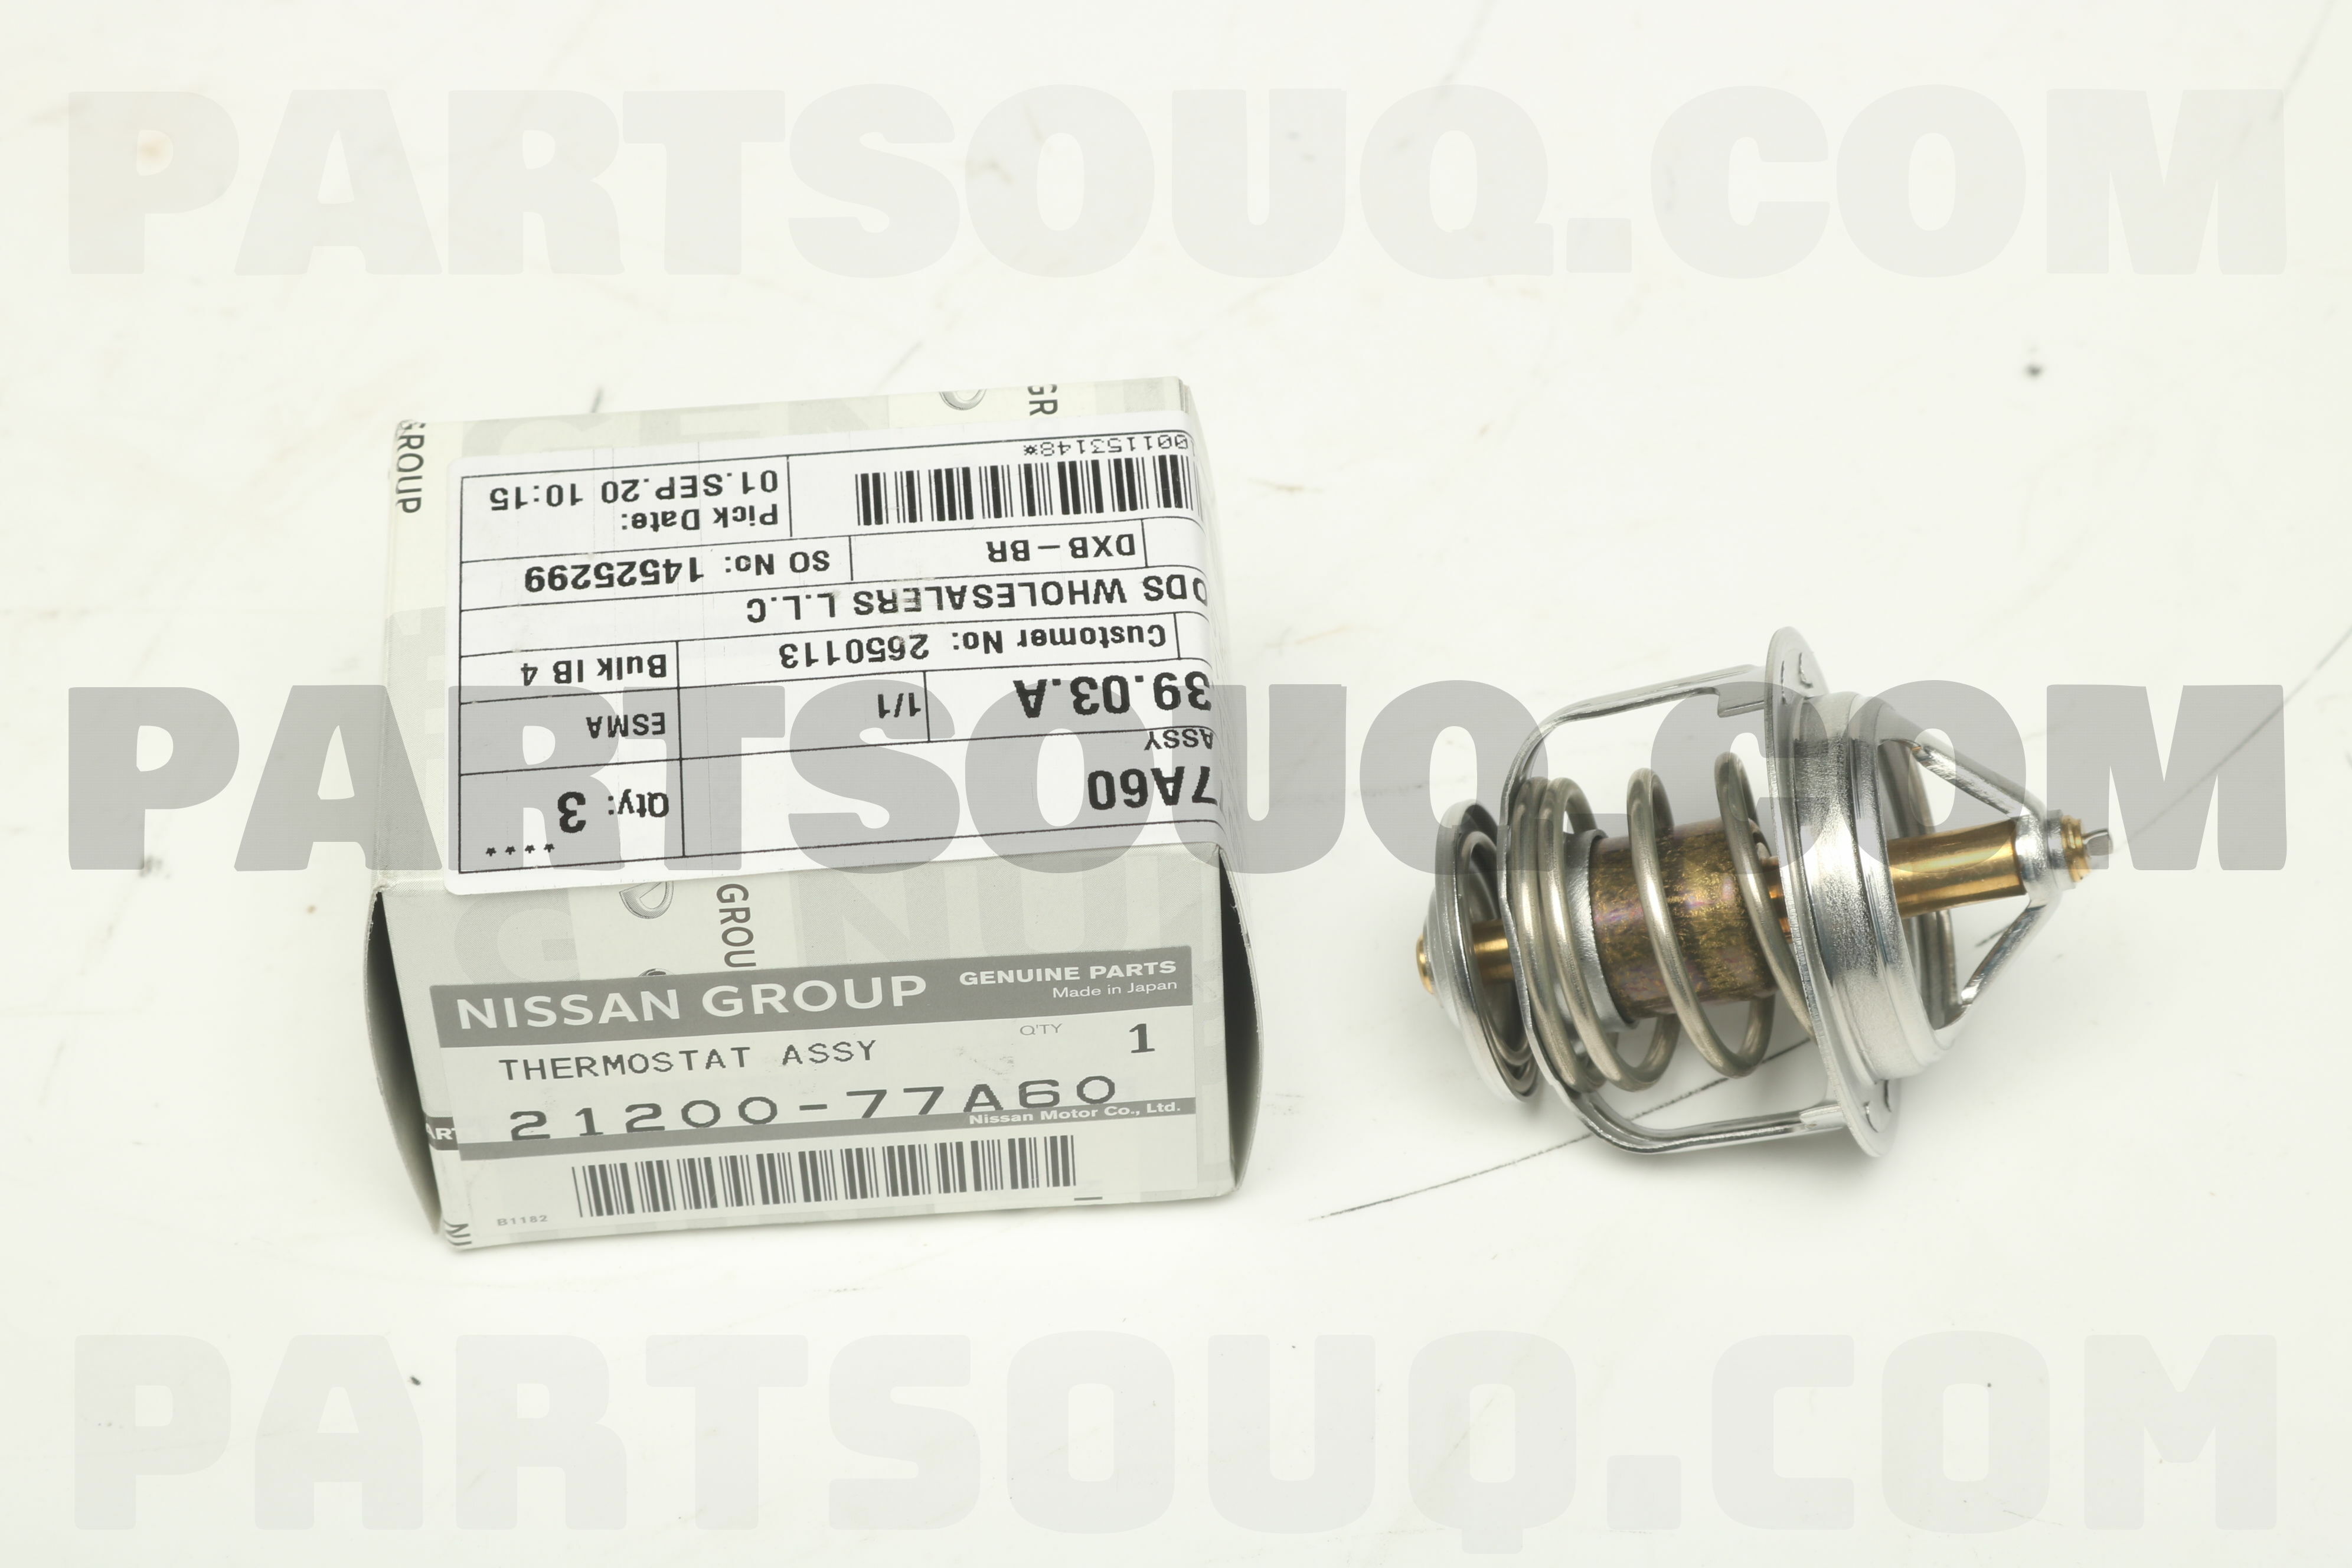 THERMOSTAT ASSY 2120077A63 | Nissan Parts | PartSouq